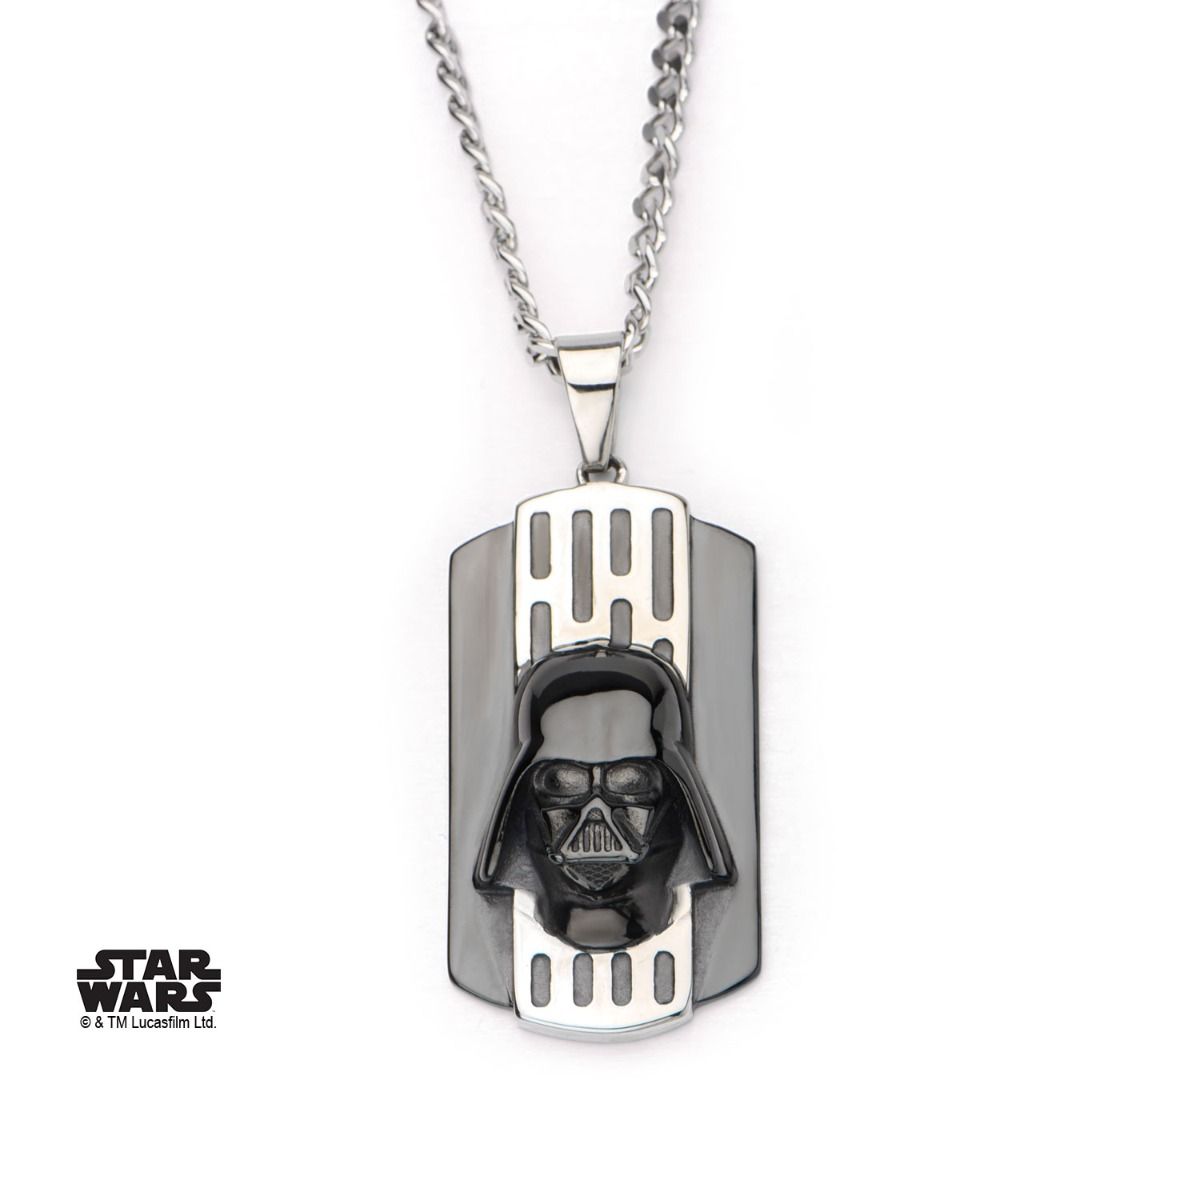 STAR WARS Star Wars 3D Darth Vader Dog Tag Pendant Necklace -Rebel Bod-RebelBod